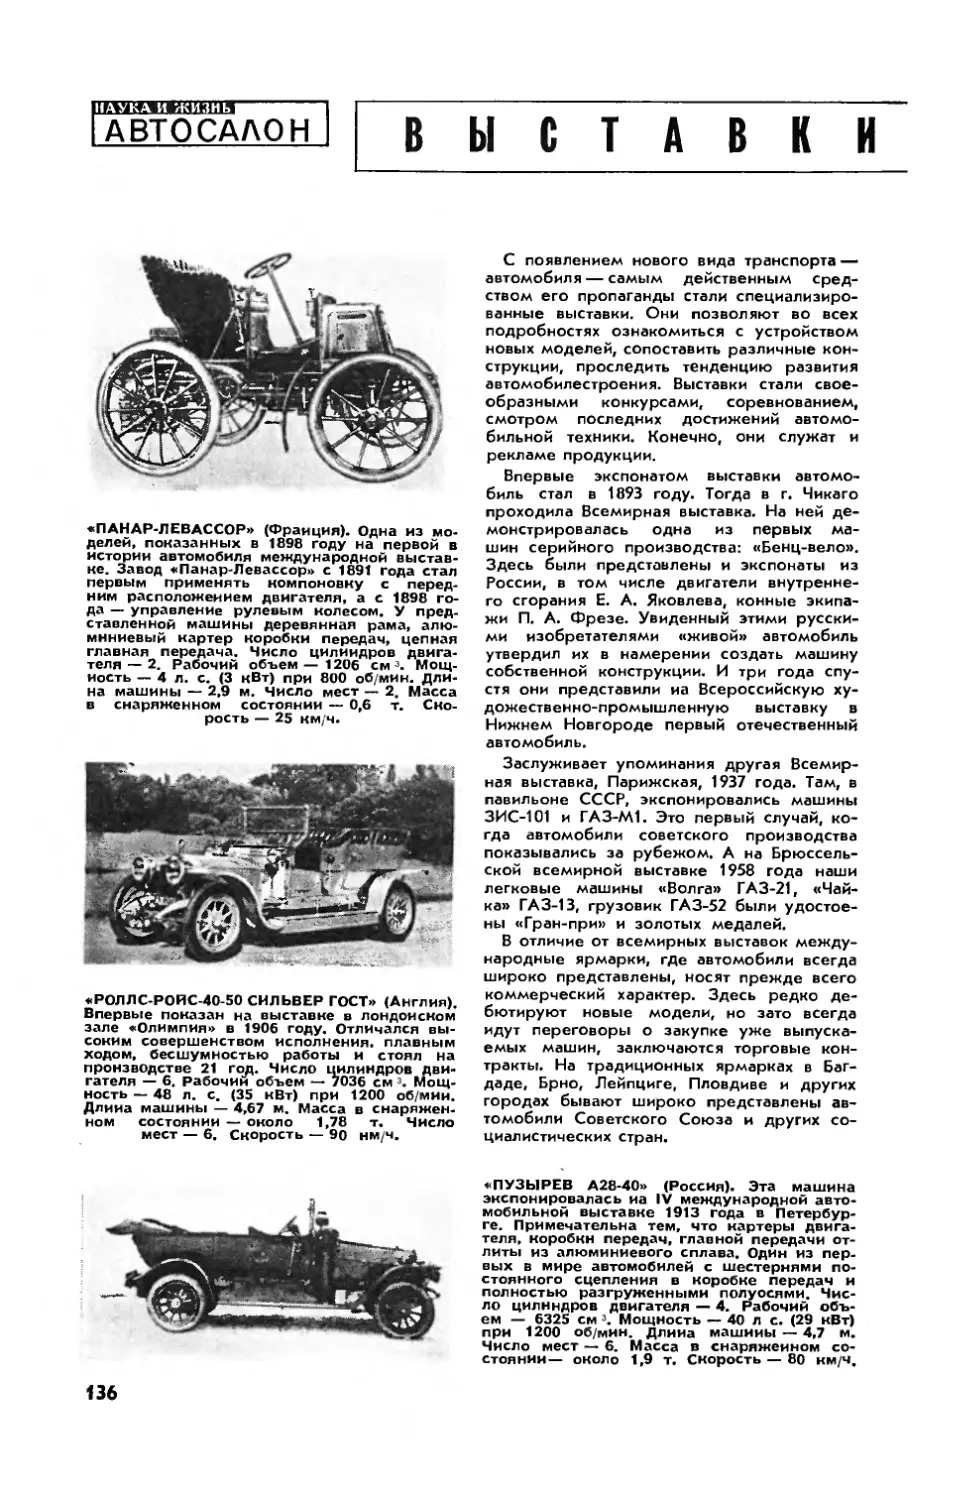 Л. ШУГУРОВ — Выставки автомобилей